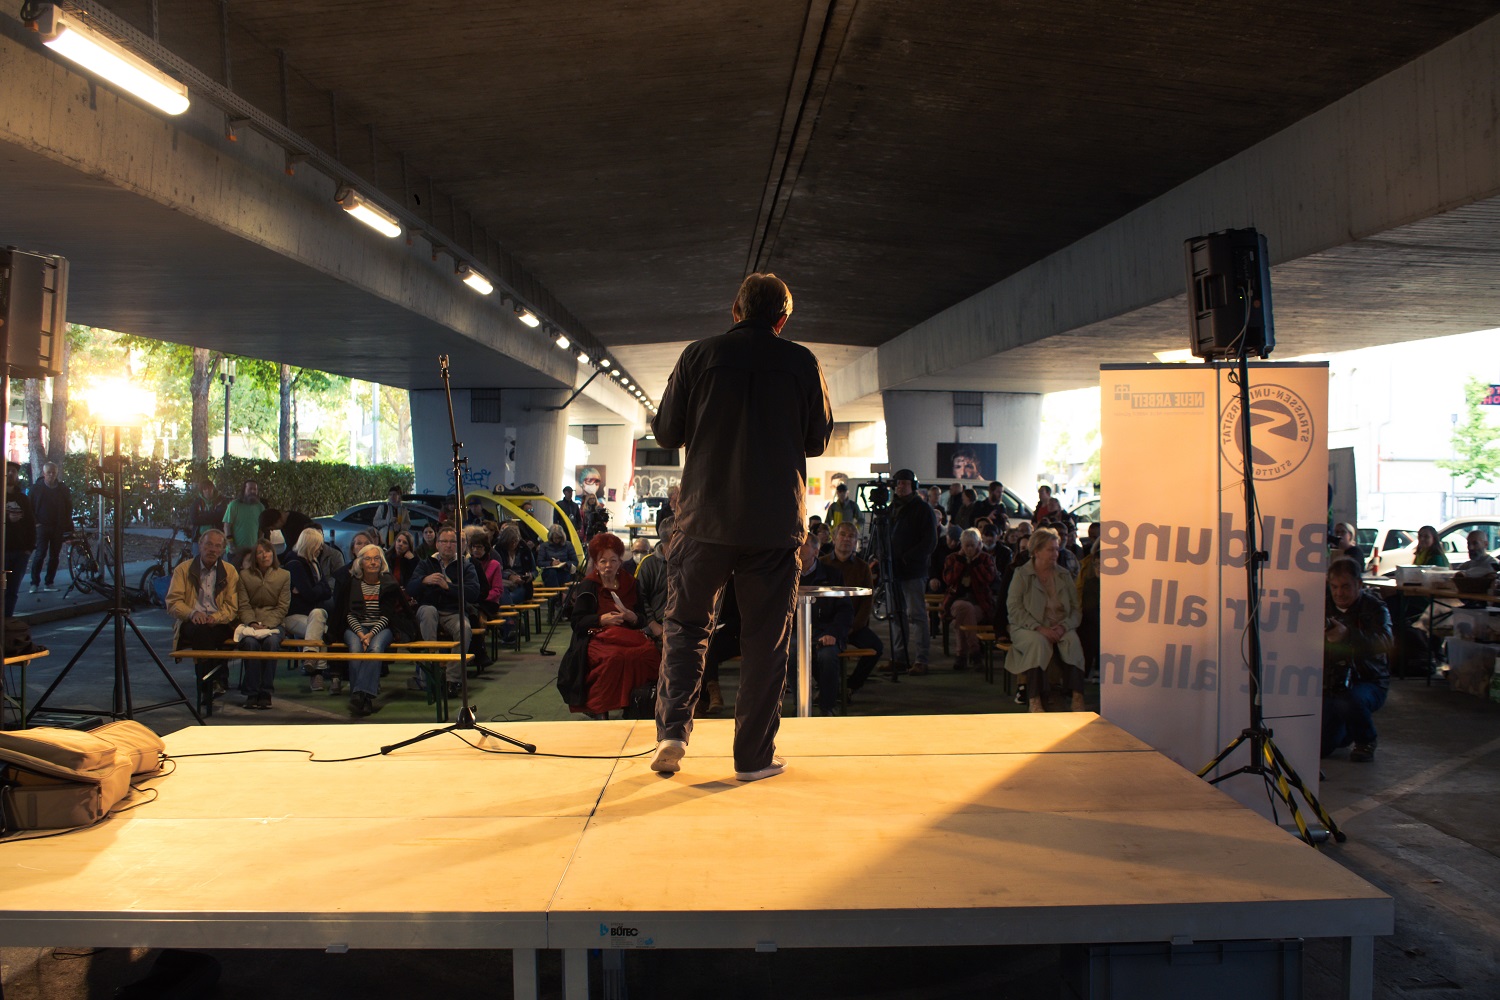 Ein Mann steht vor einem Publikum auf einer Bühne im Straßenraum